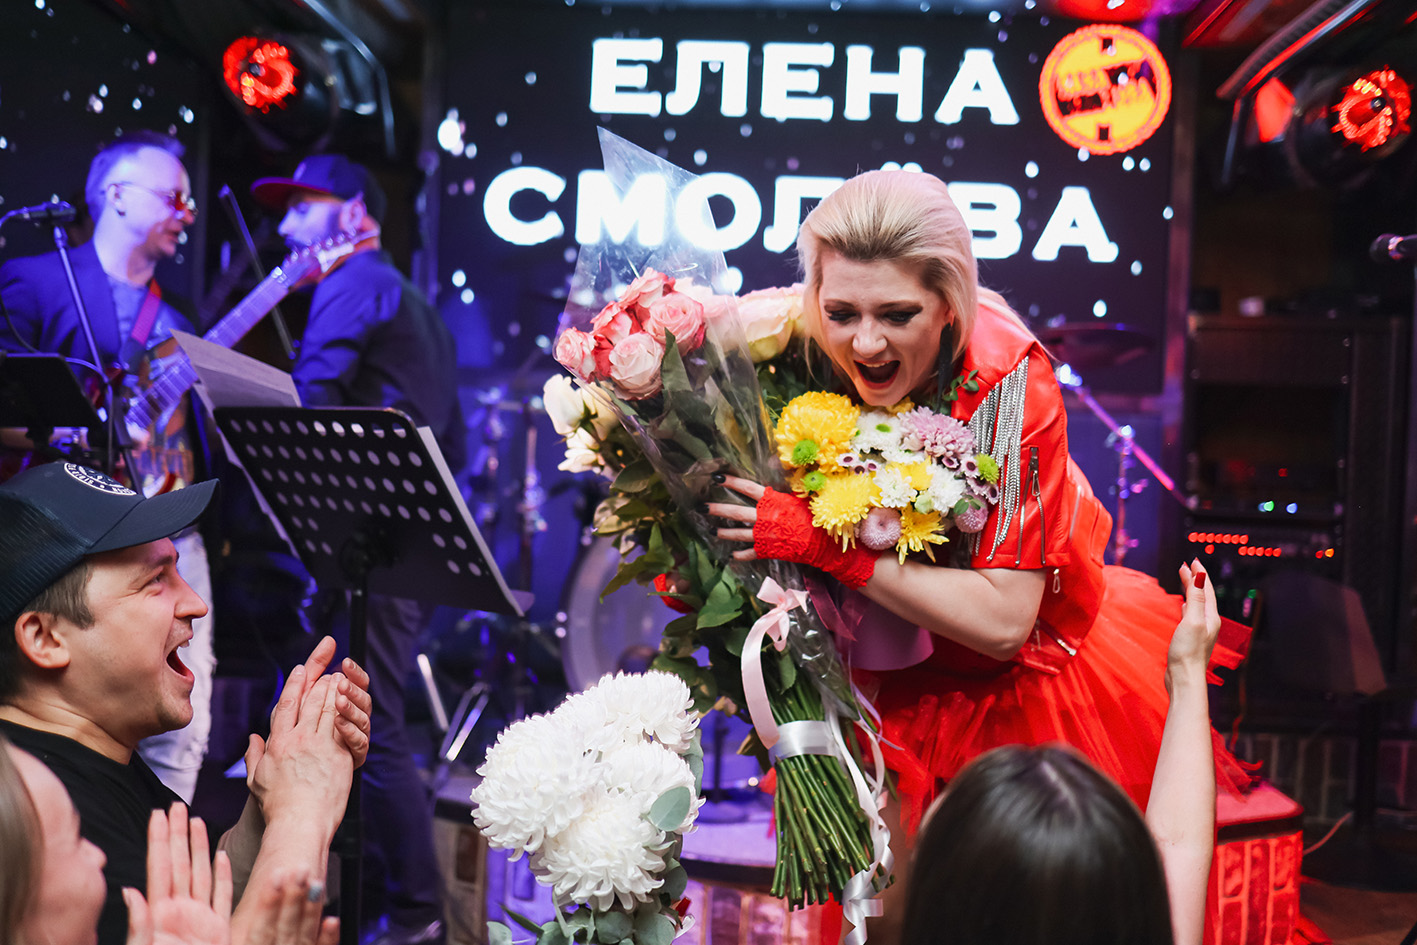 Елена Смолёва певица и автор песен: «Ваш путь в этом мире продолжается. Всегда идите вперёд!»